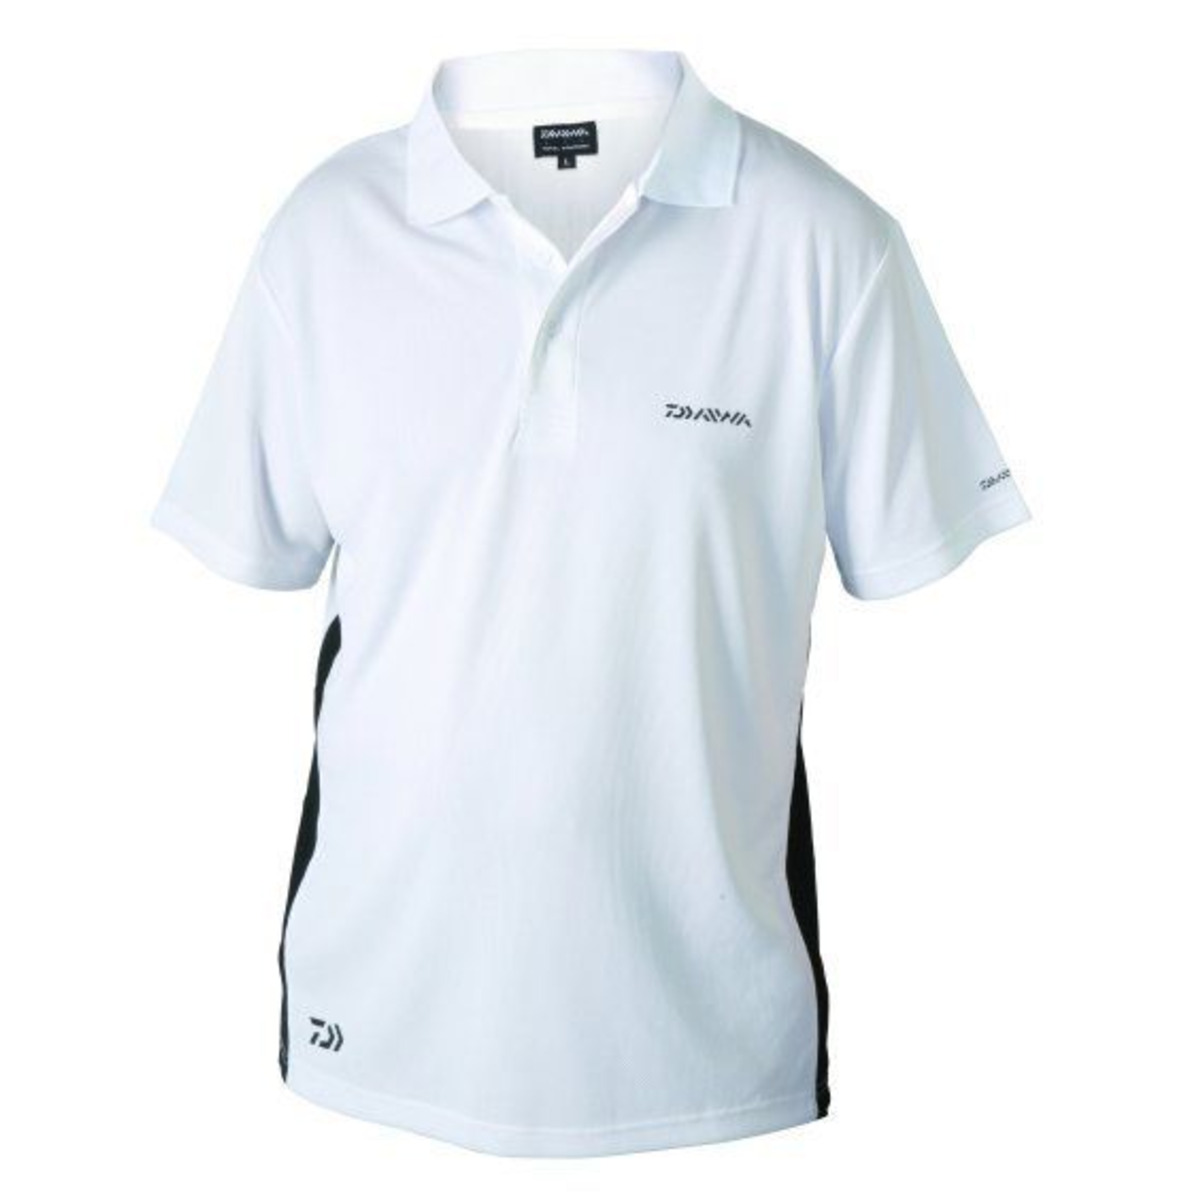 Daiwa Polo Shirt - L - White         